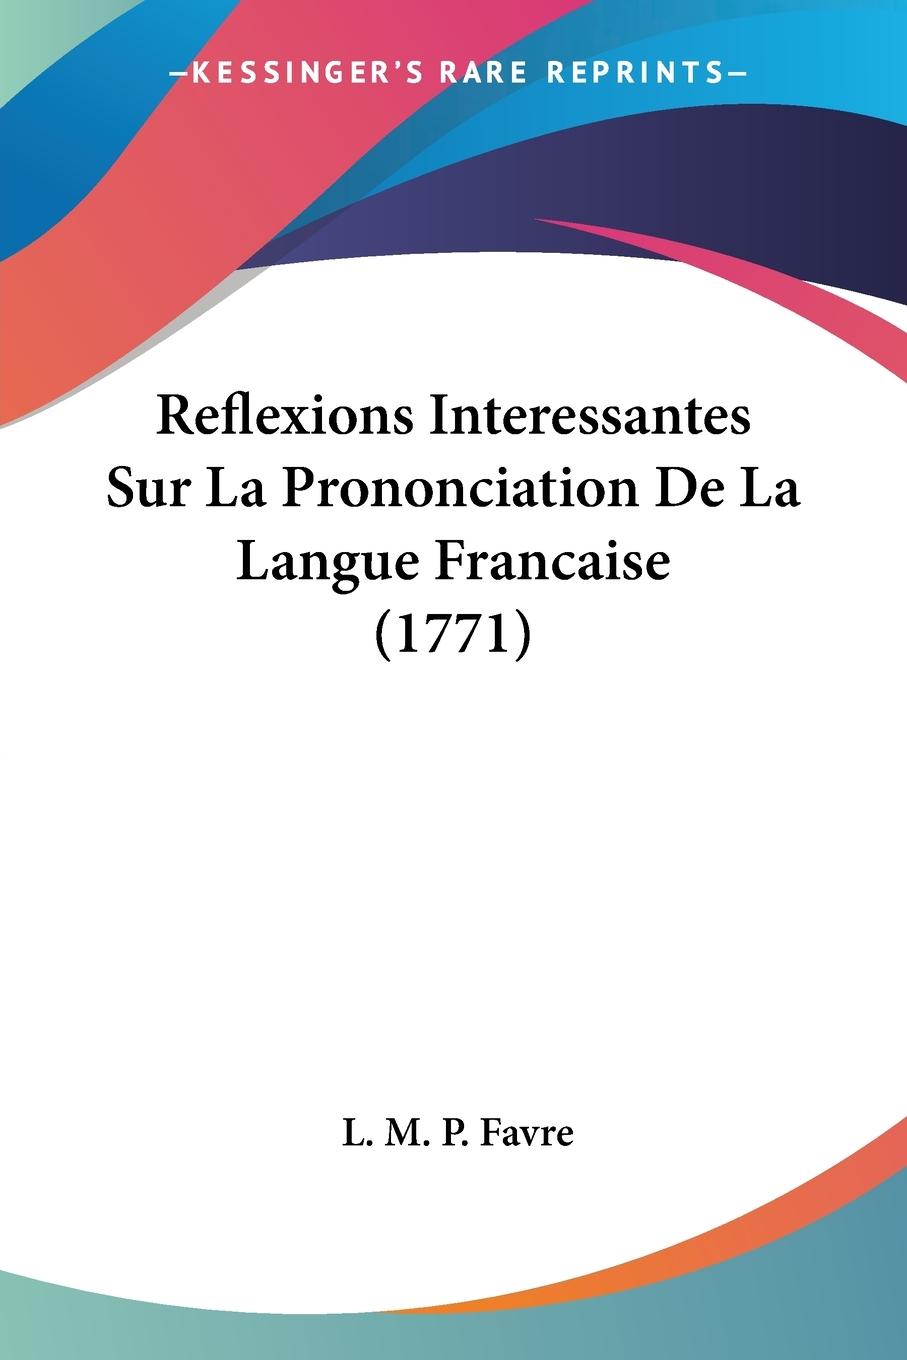 Reflexions Interessantes Sur La Prononciation De La Langue Francaise (1771) - Favre, L. M. P.